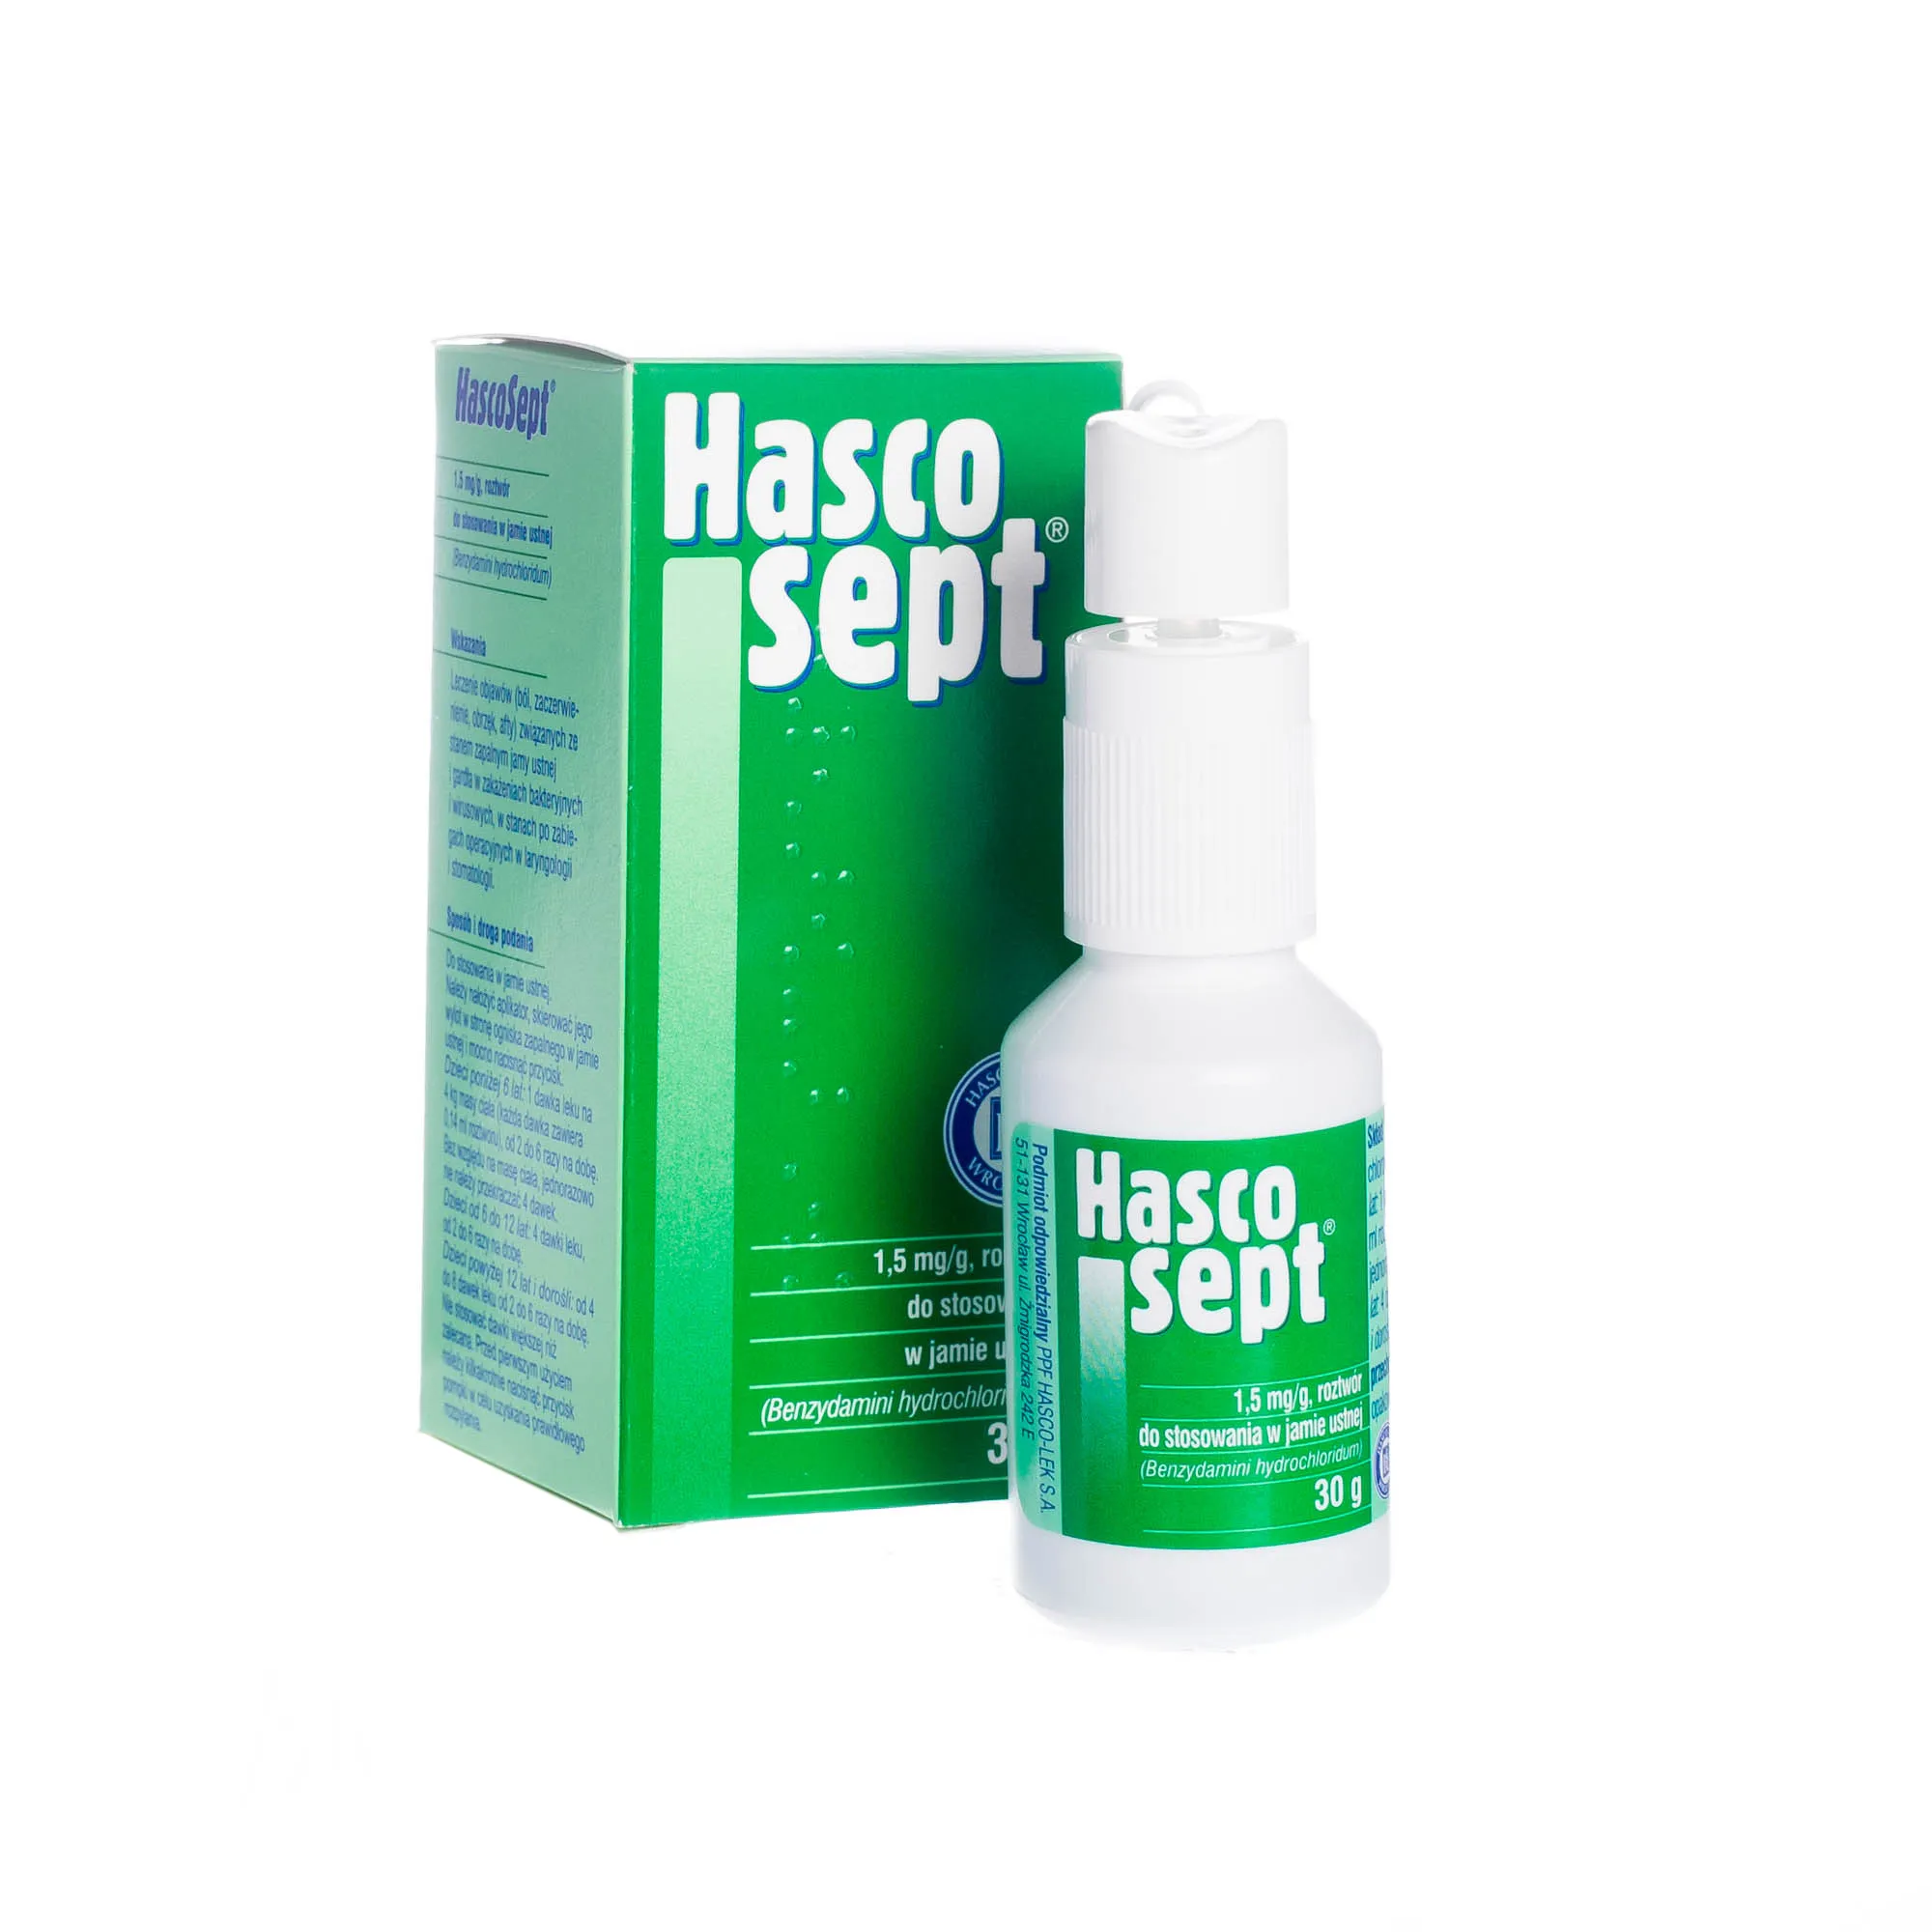 Hascosept, 1,5 mg/g, roztwór do stosowania w jamie ustnej, 30 g